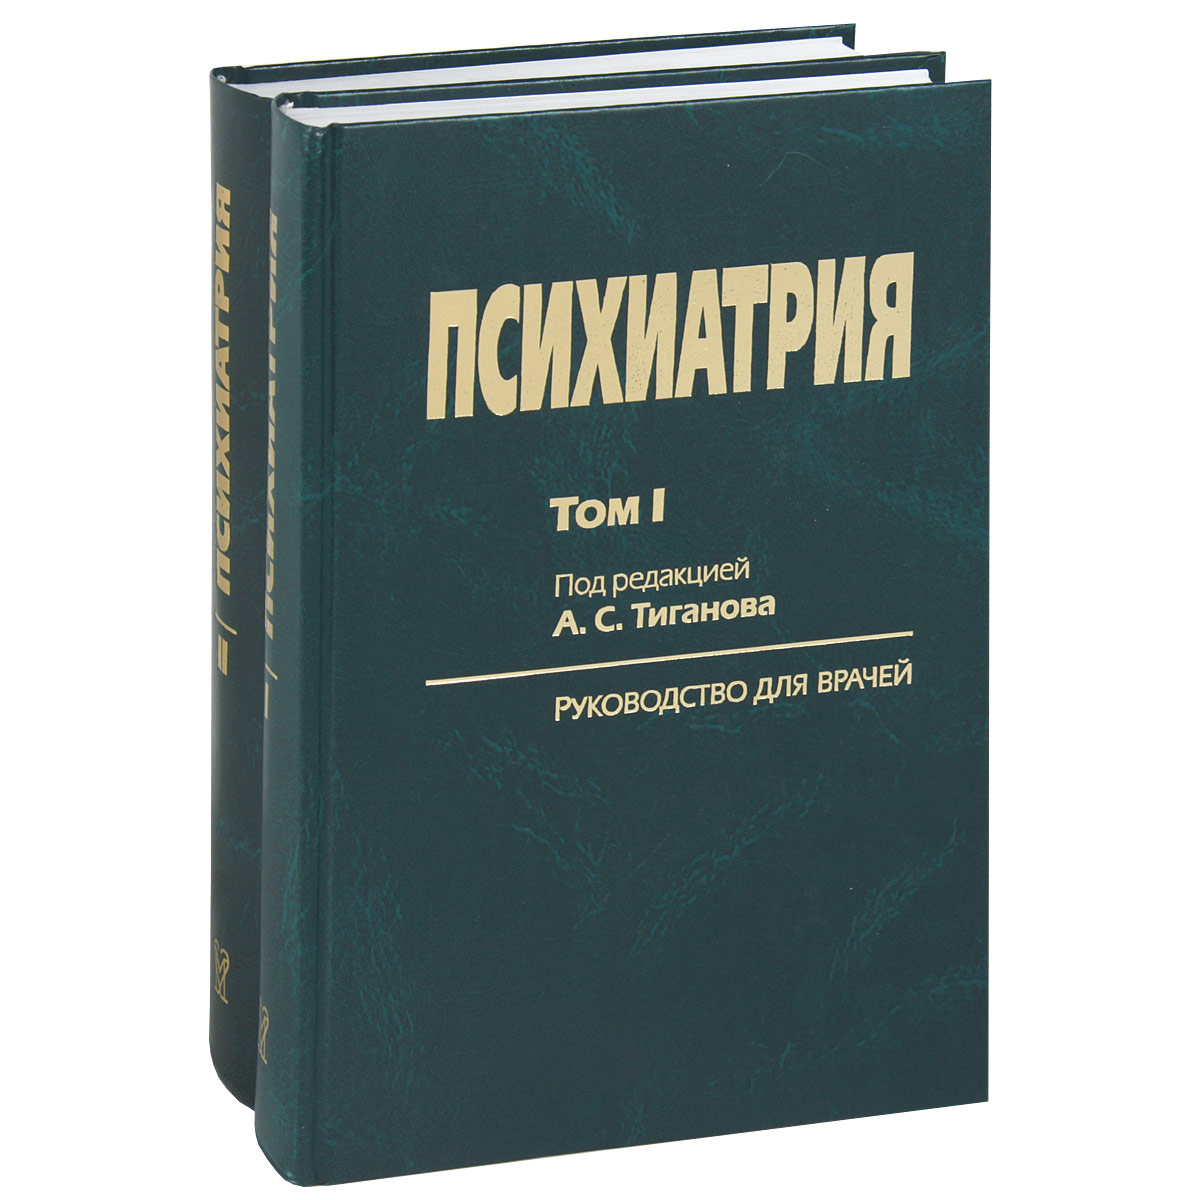 А. С. Тиганов - «Психиатрия. Комплект из 2х томов»